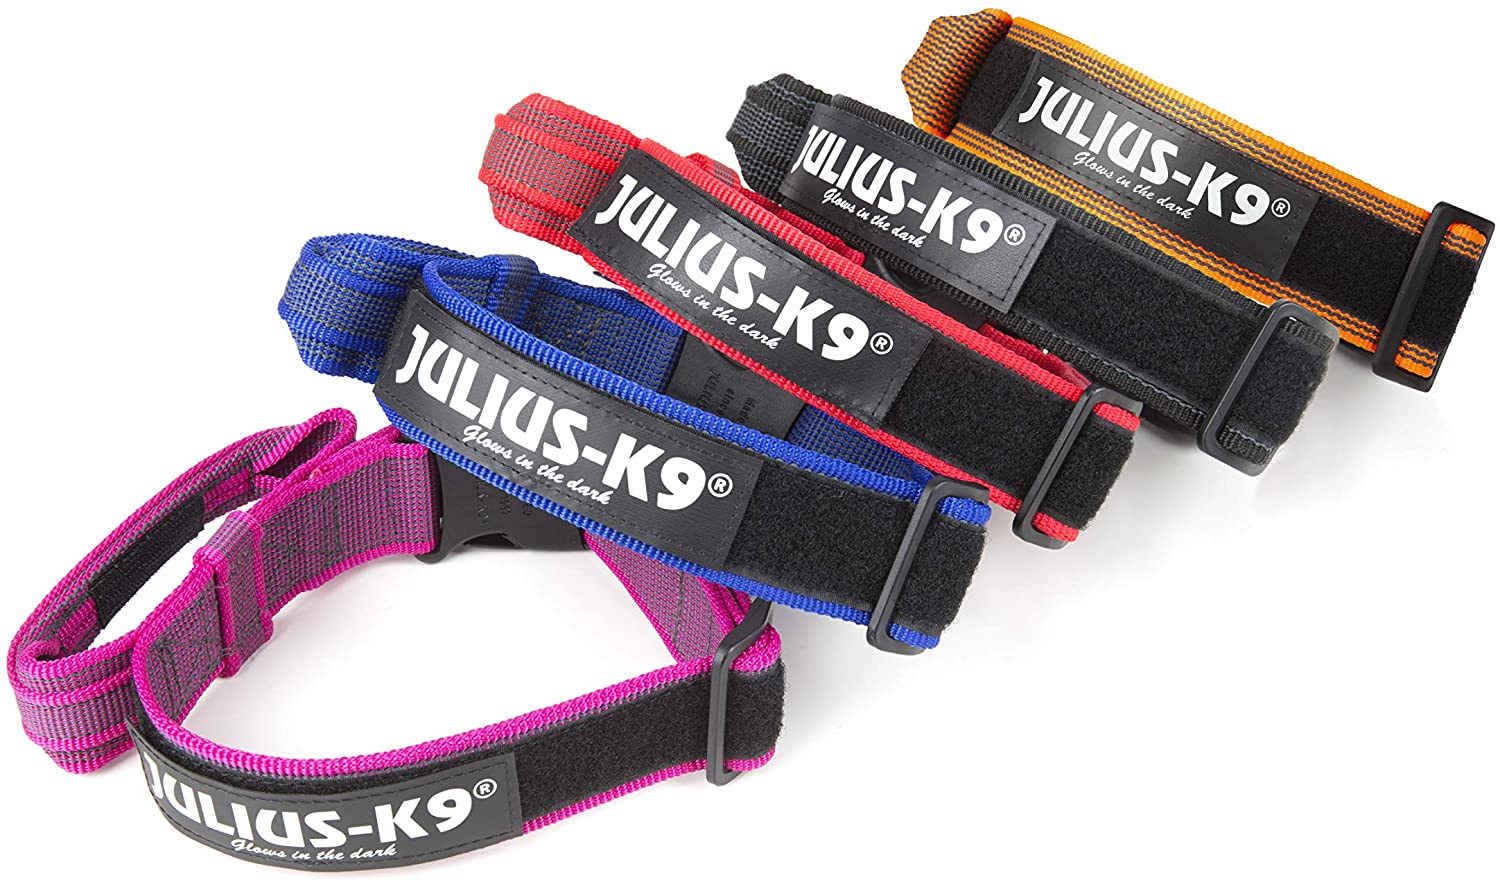  Julius-K9 Color & Gray Collar con La Manija, La Cerradura De Seguridad Y El Remiendo Intercambiables, 40 Mm (38-53 Cm), Naranja-Gris 